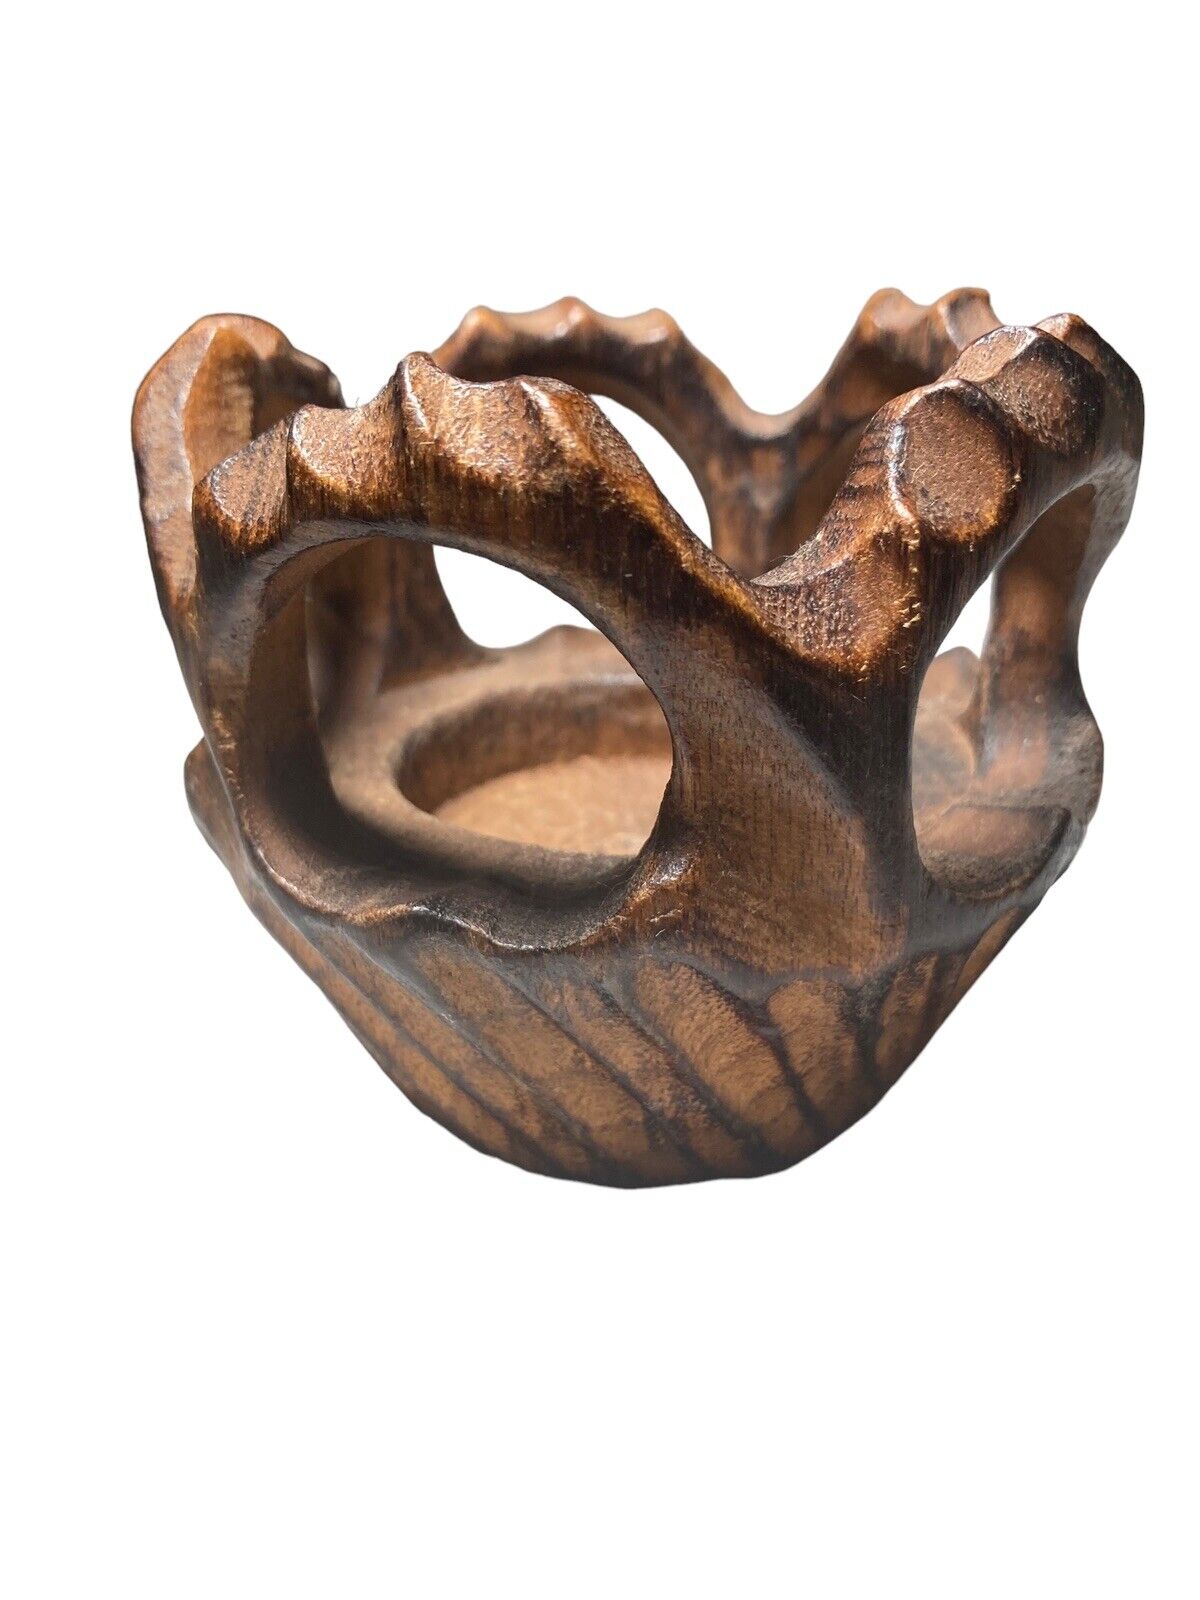 CANDLE VOTIVE HOLDER Vintage HAND CARVED Wood Chinese Craftsman